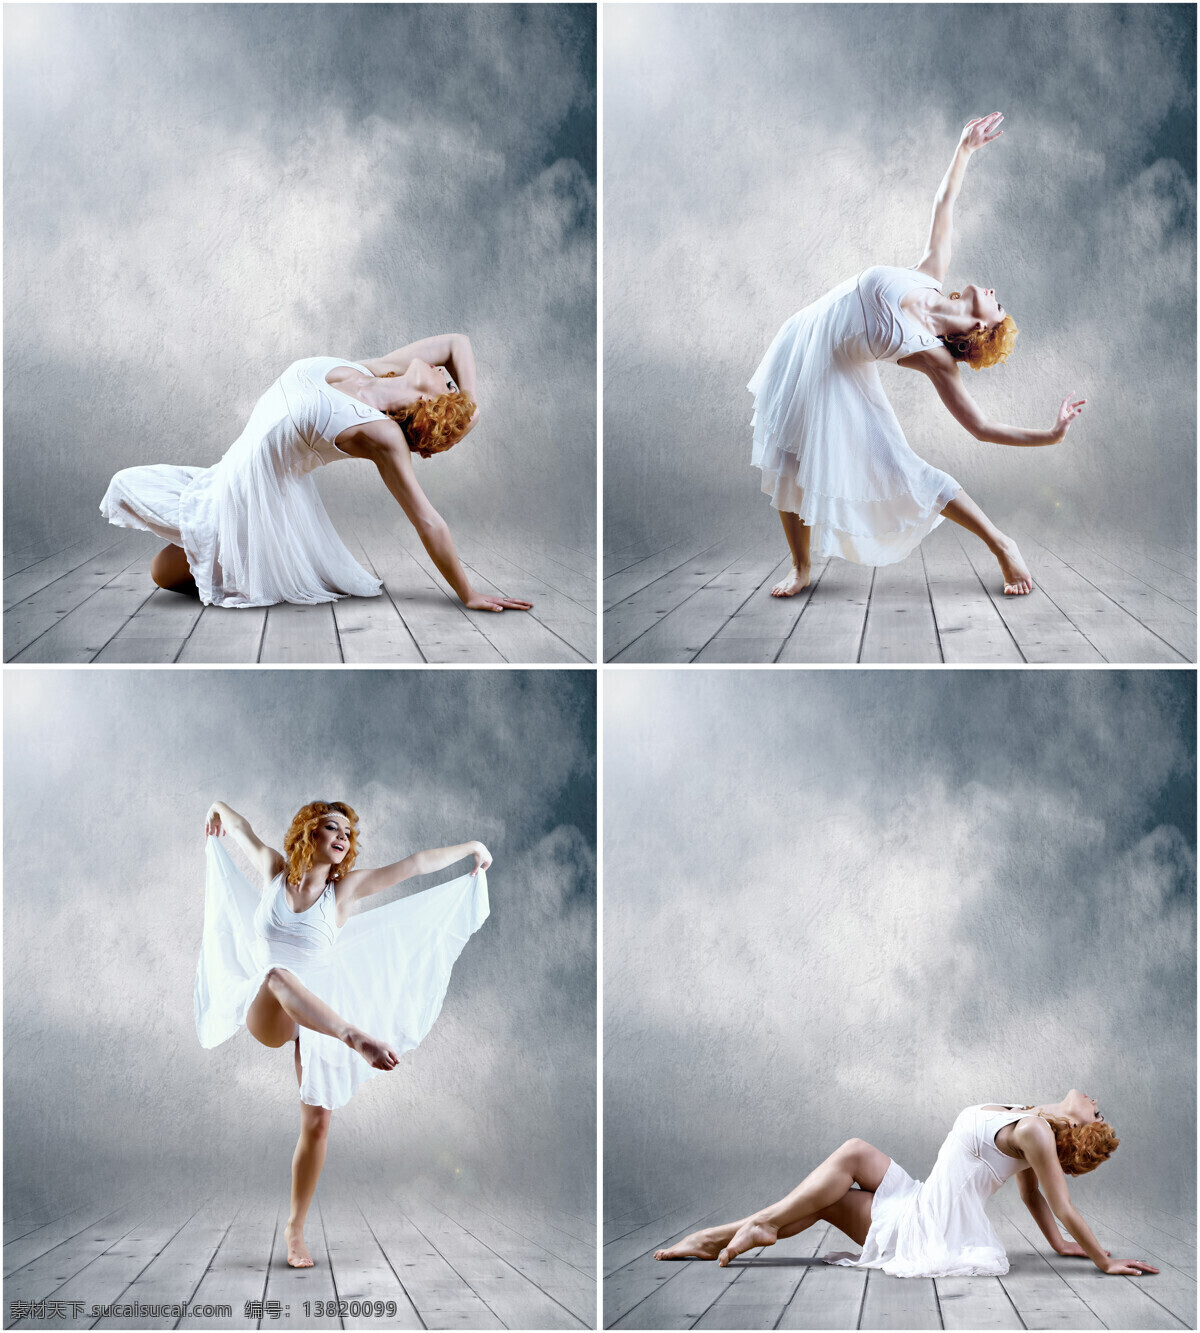 女孩 牛奶 外国女性 美女 舞蹈 跳舞 芭蕾 创意图片 美女图片 人物图片